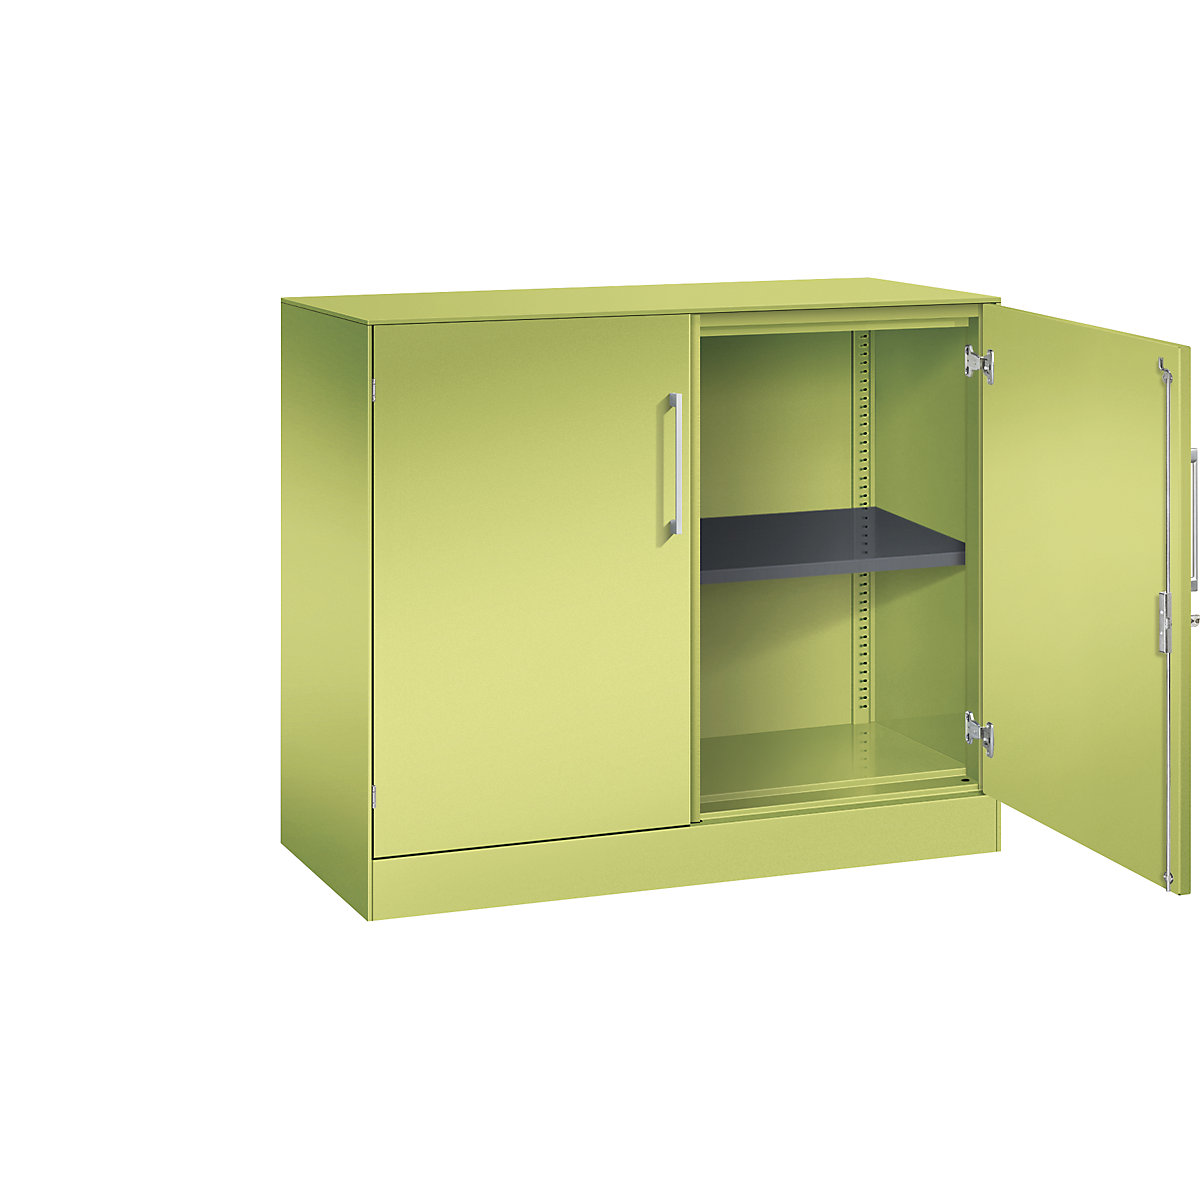 ASISTO double door cupboard, height 897 mm – C+P, width 1000 mm, 1 shelf, viridian green/viridian green-4